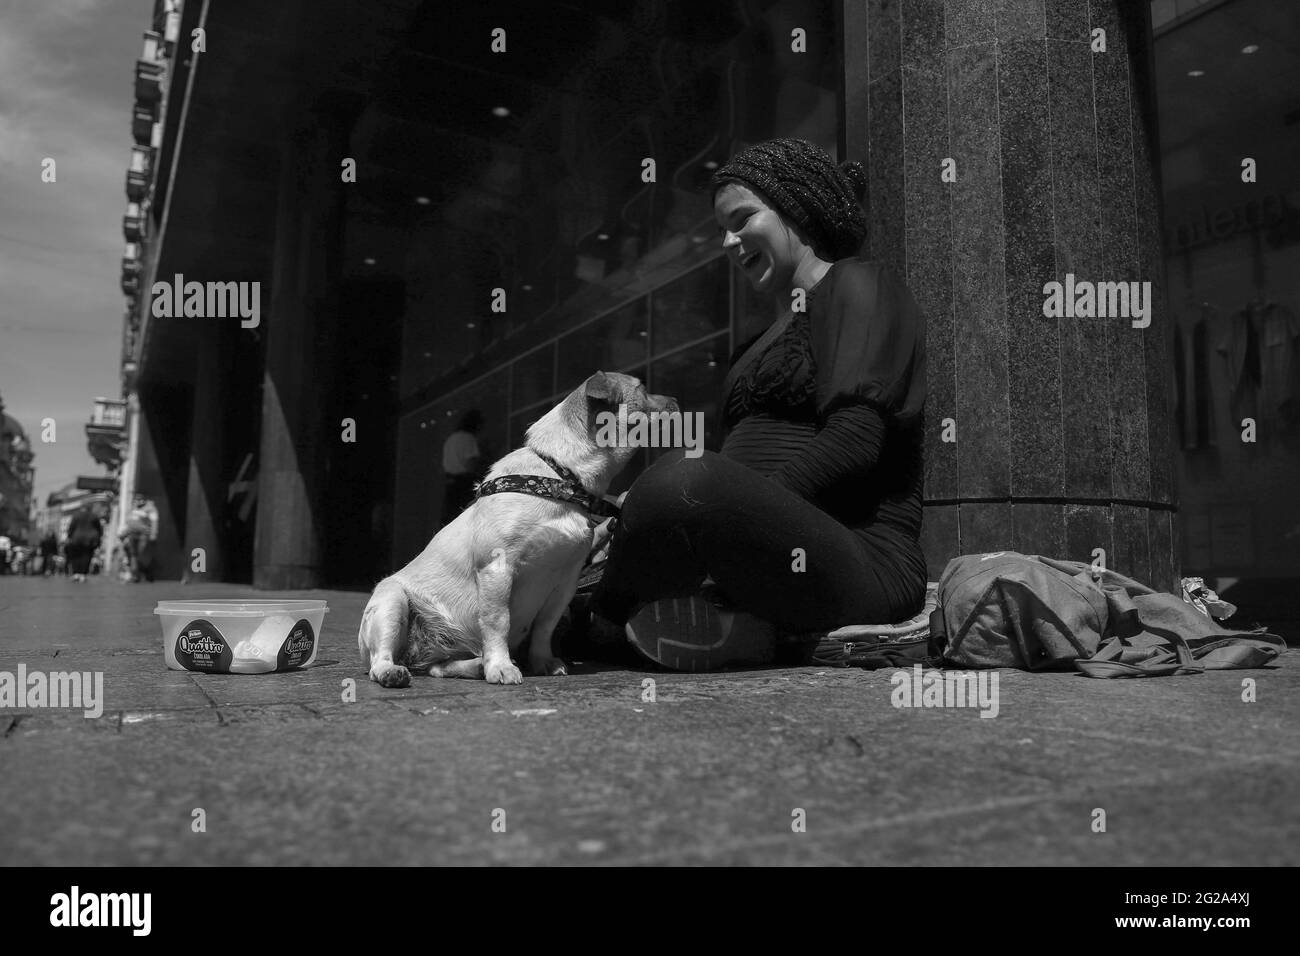 Serbia, 29 aprile 2021: Un simpatico cane aiuta una giovane donna incinta che prega in via Knez Mihailova a Belgrado (B/W) Foto Stock